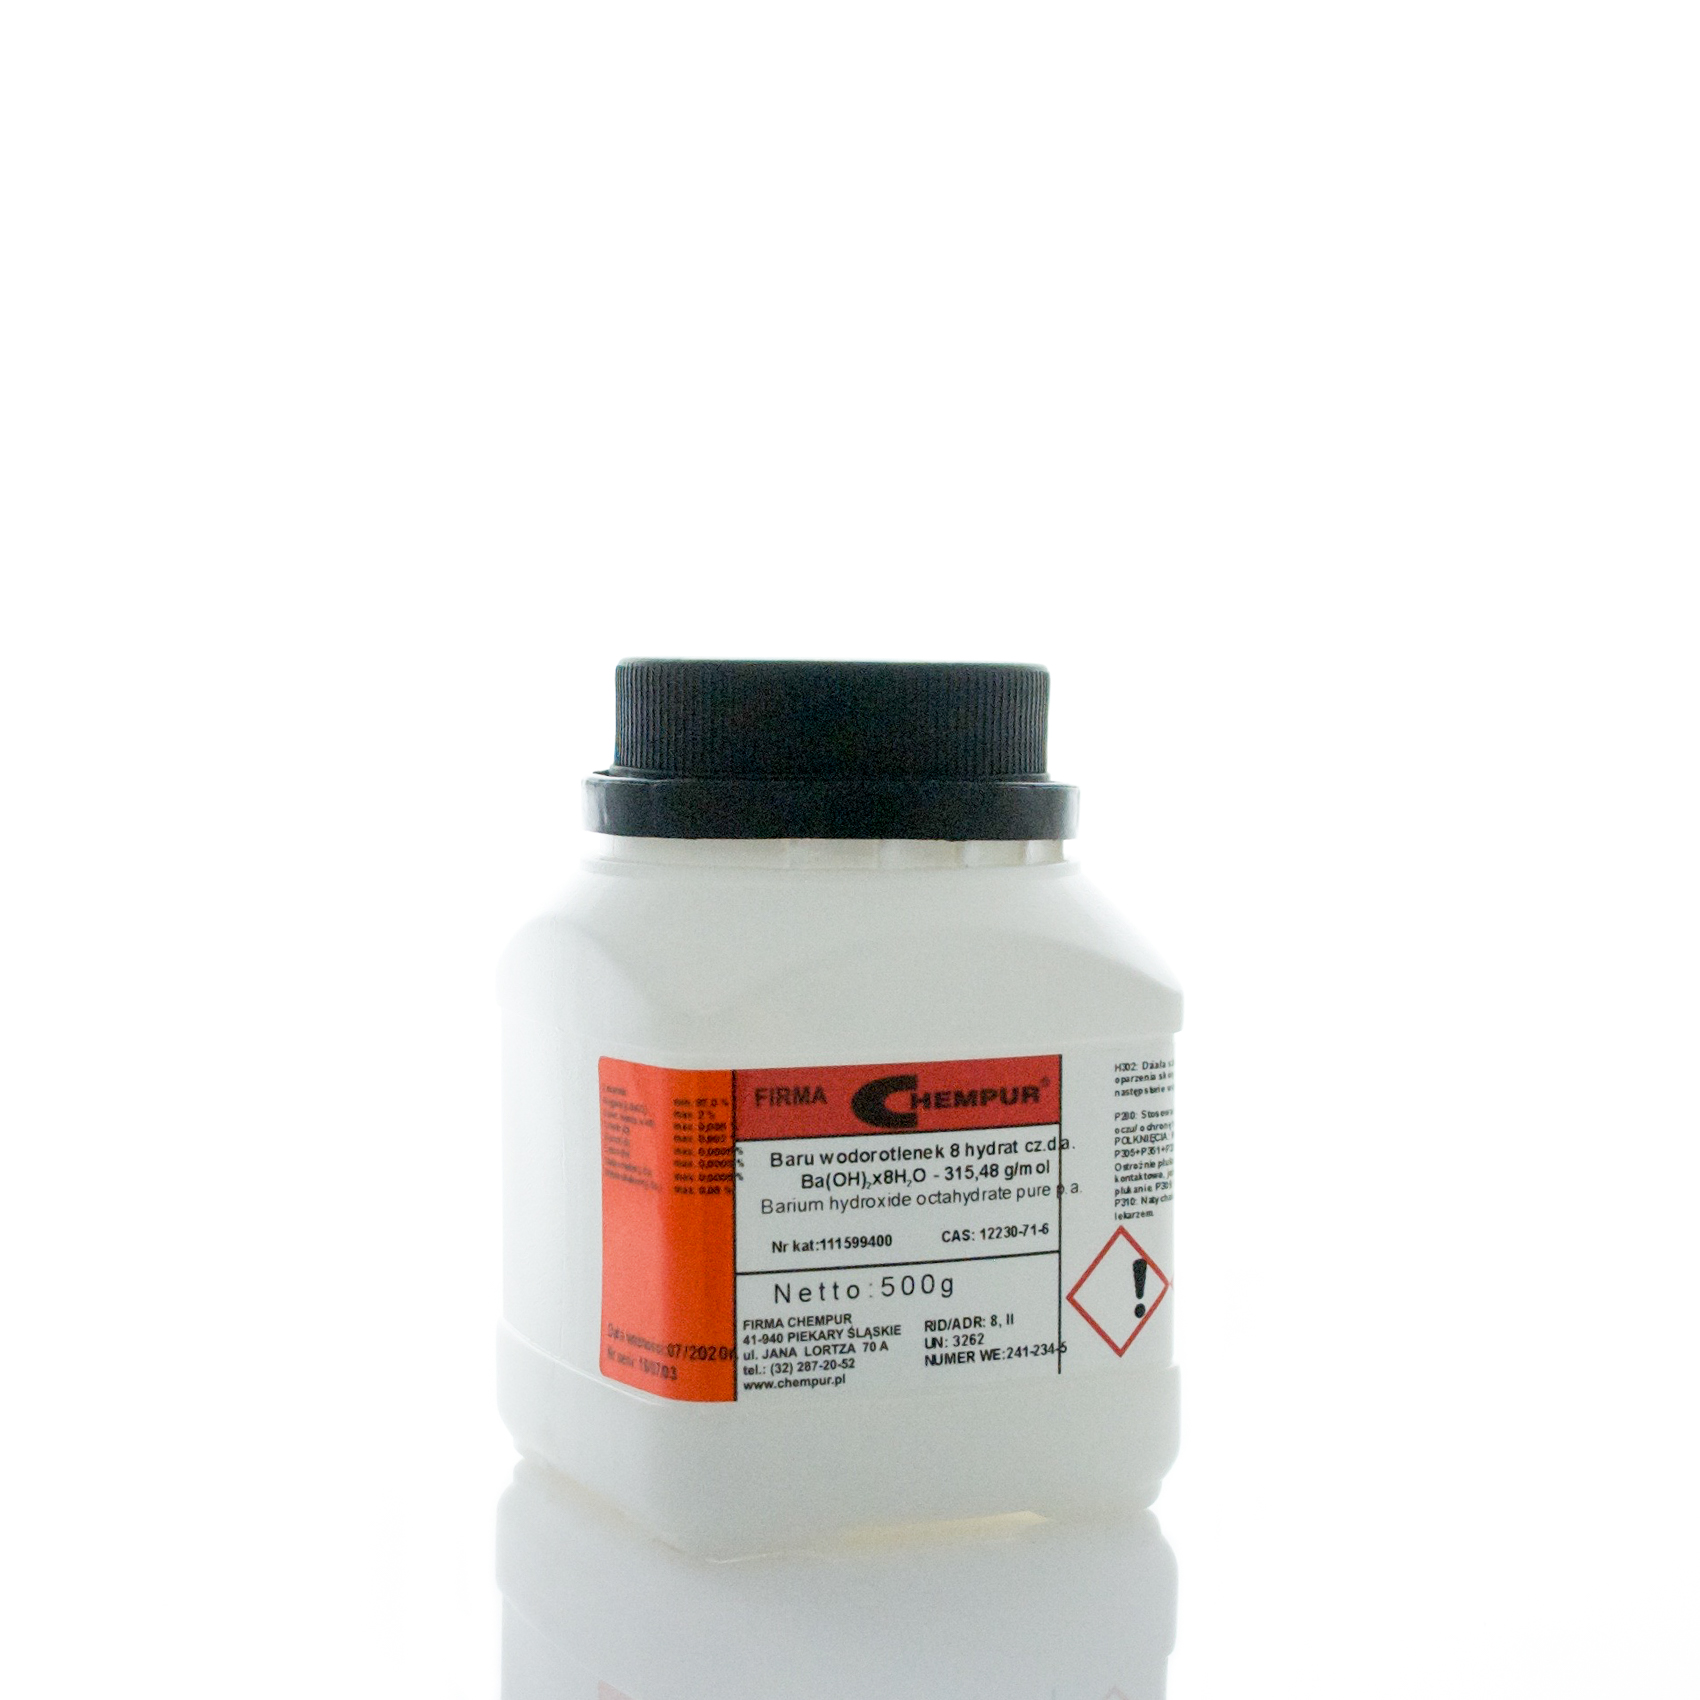 Barium hydroxide octahydrate pure p.a.